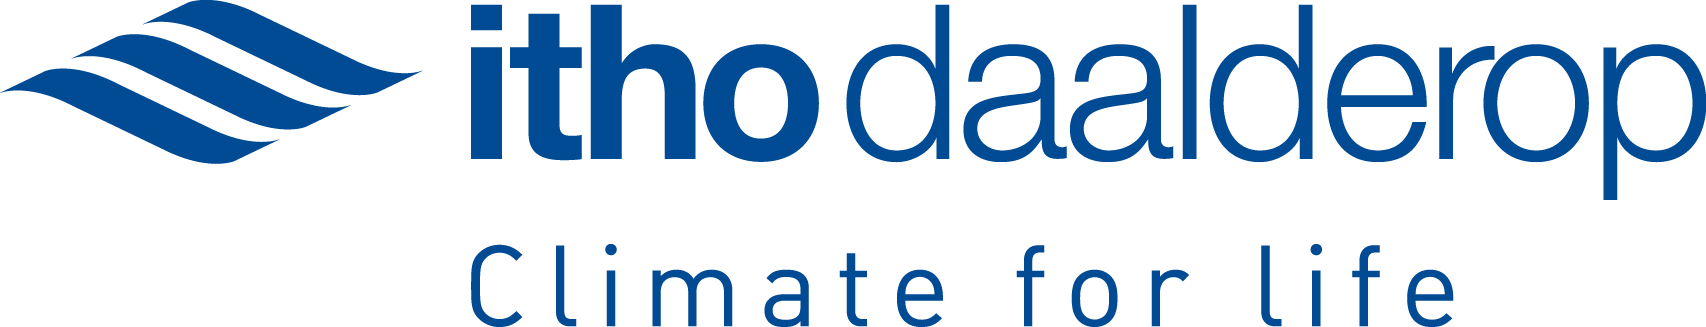 Itho Daalderop Logo